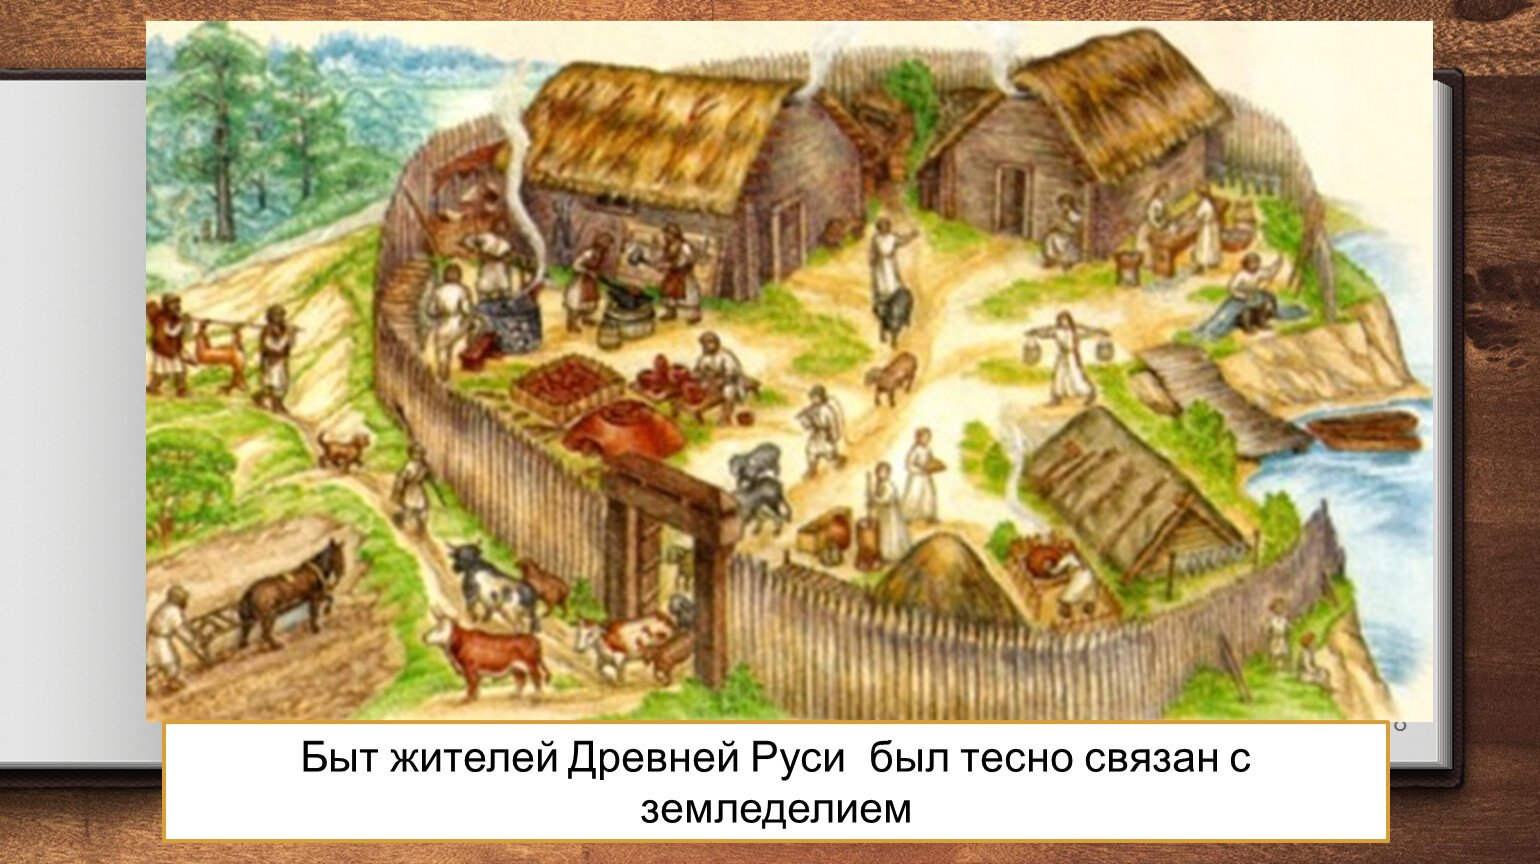 Славянский поселок древней Руси